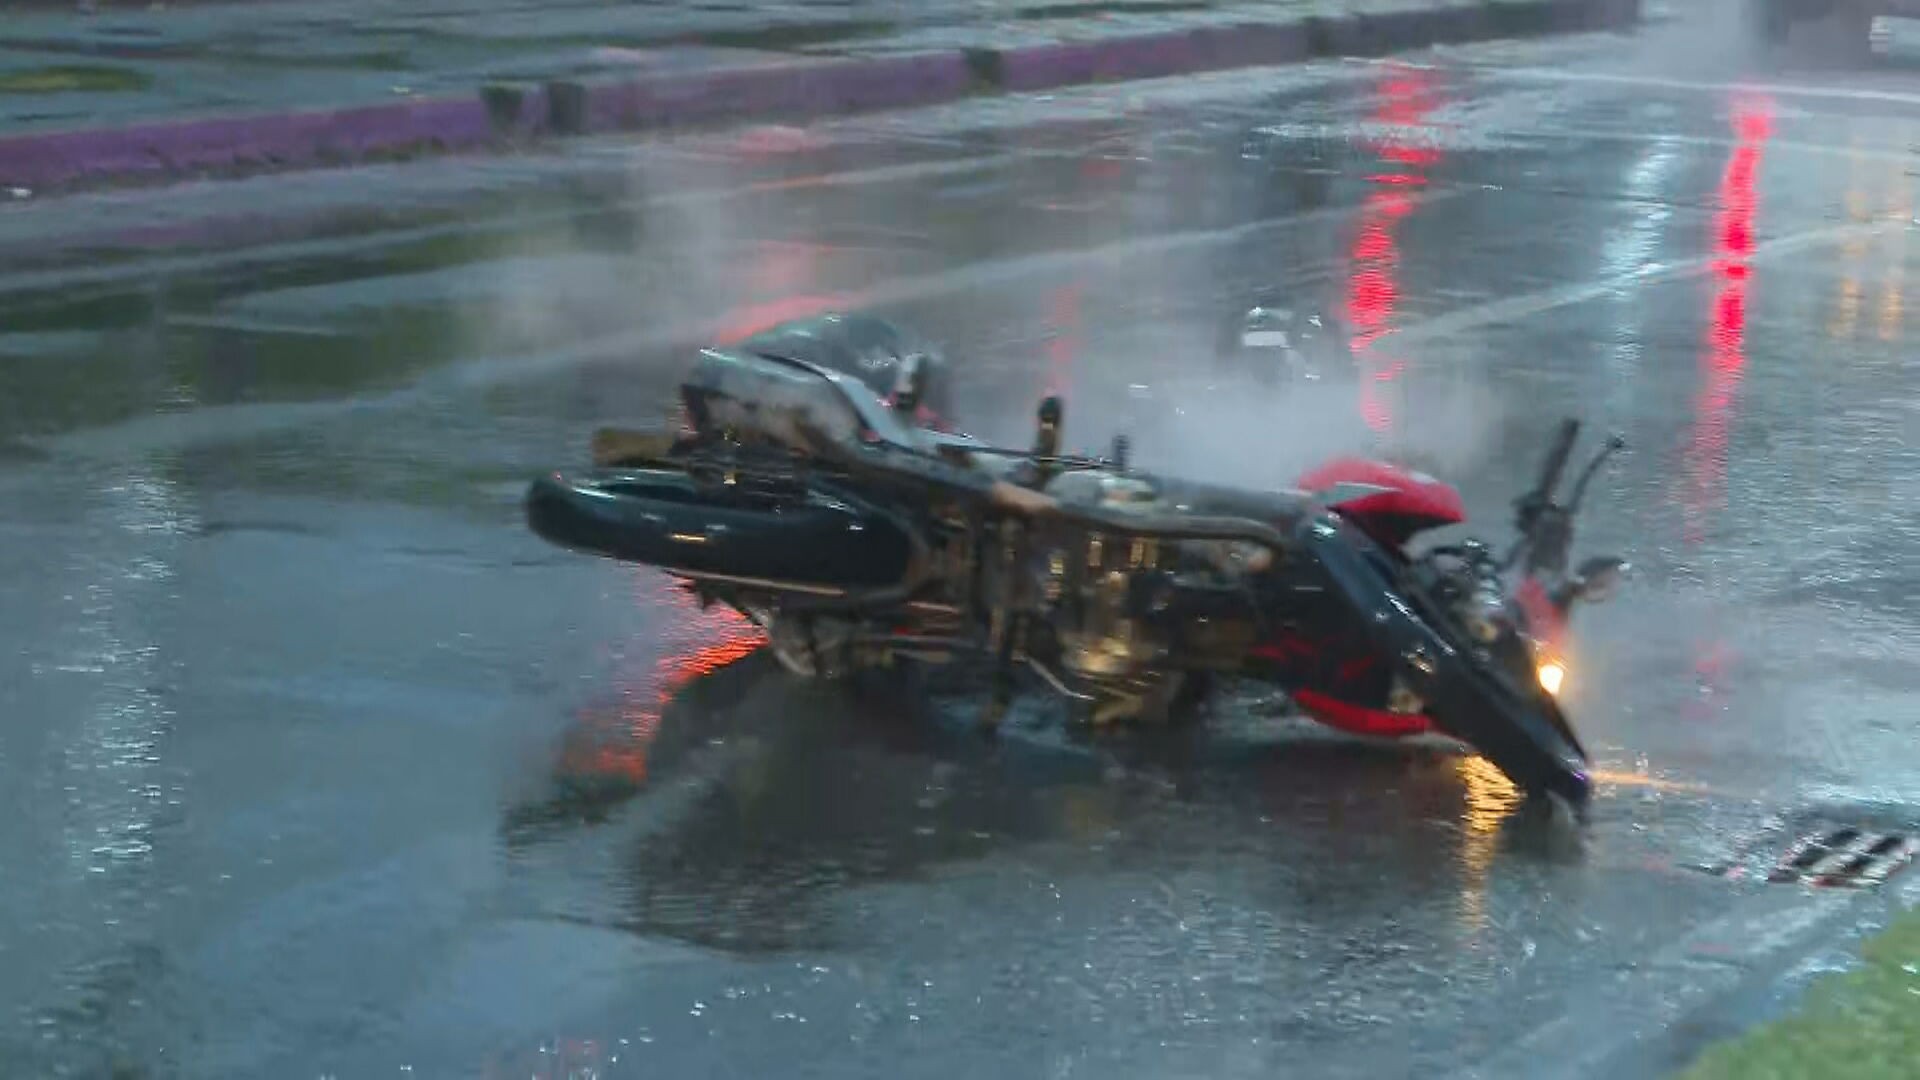 VÍDEO: Motociclista cochila e cai em pista molhada na Barra da Tijuca